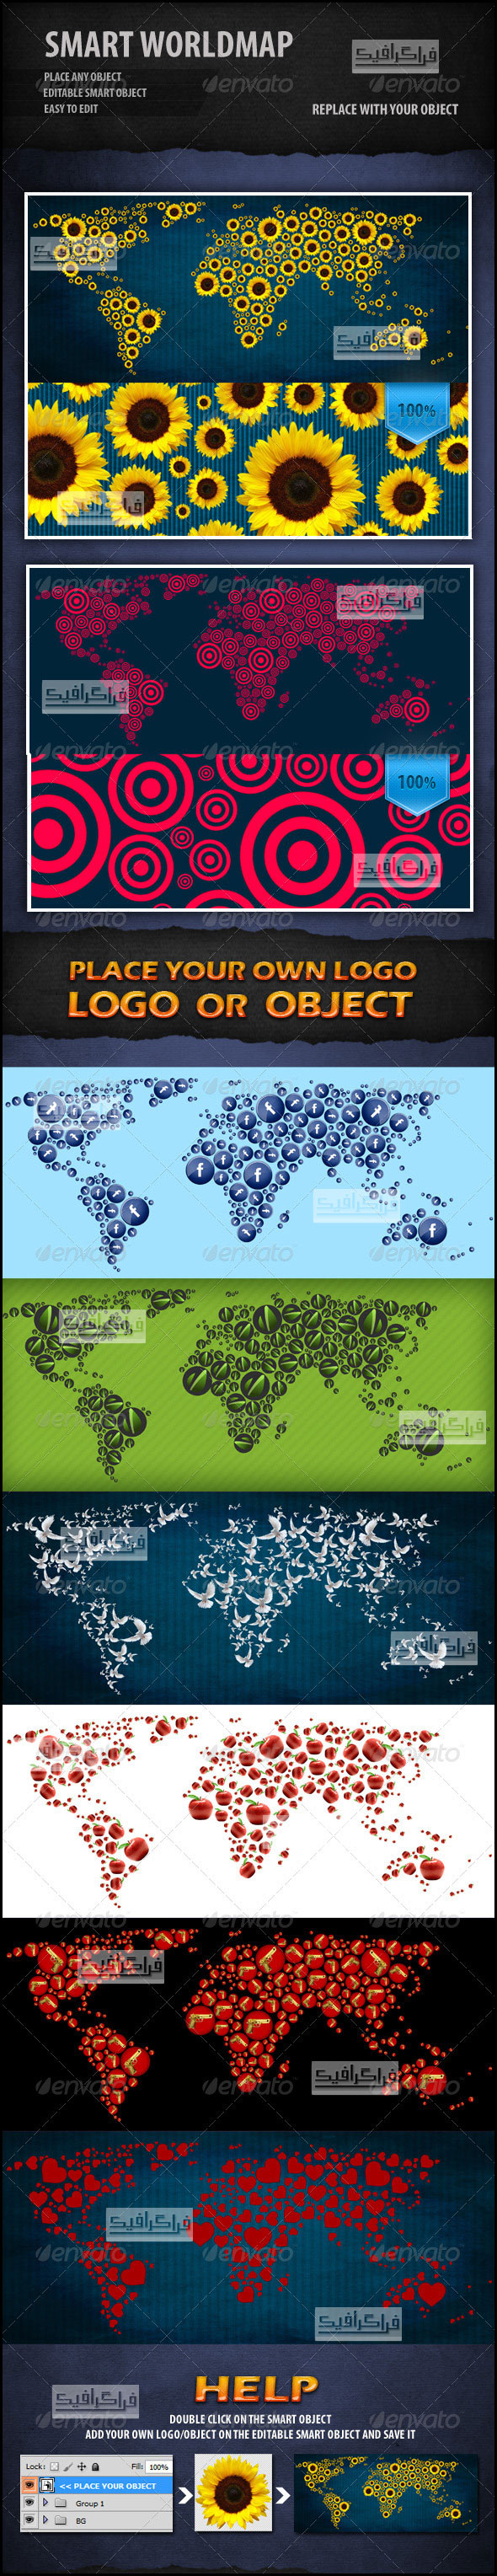 دانلود فایل لایه باز نقشه جهان هوشمند